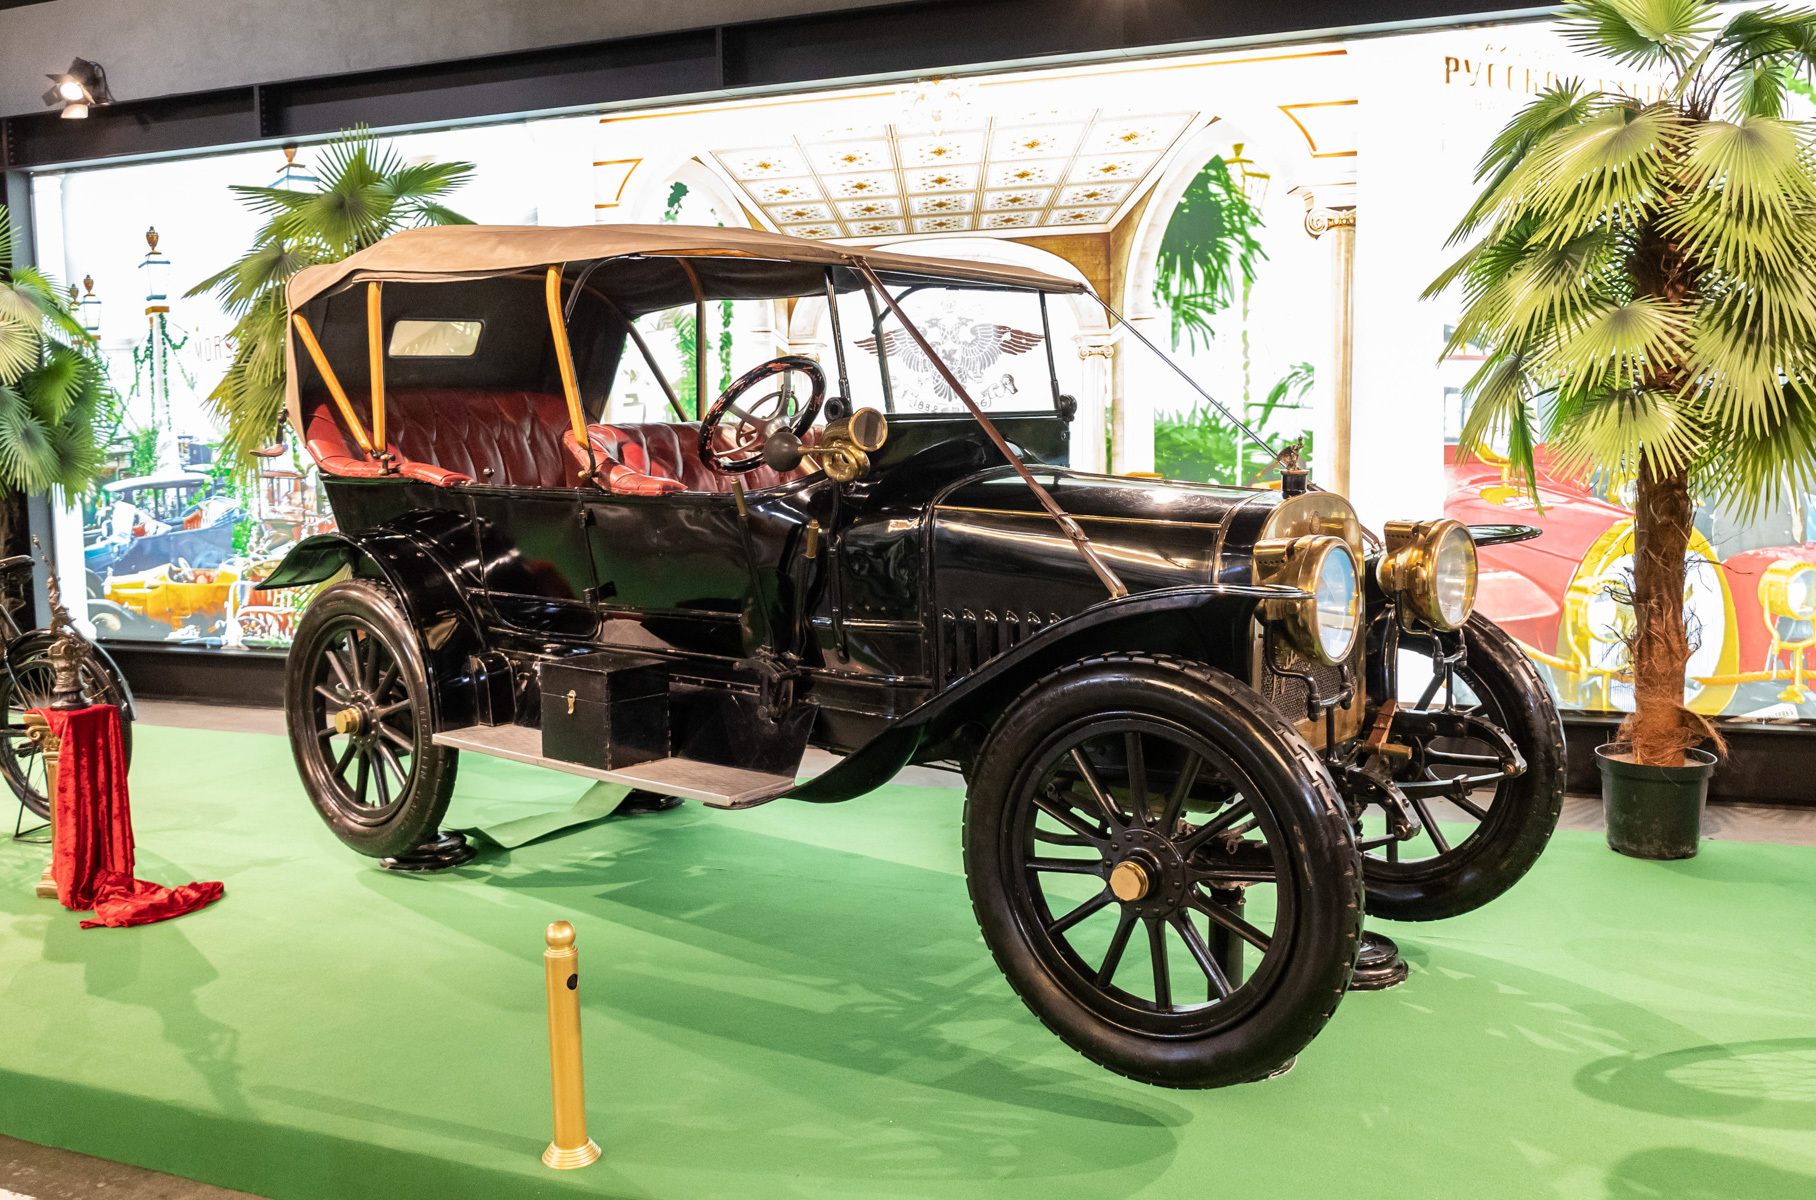 Главный экспонат выставки — единственный сохранившийся в мире «Руссо-Балт» Тип К 12/20 НР. Марка существовала семь лет, и за это время было выпущено около 500 машин разных классов. Легковых автомобилей — около 140 штук. Экземпляр на фото собрали предположительно в 1910 или 1911 году.